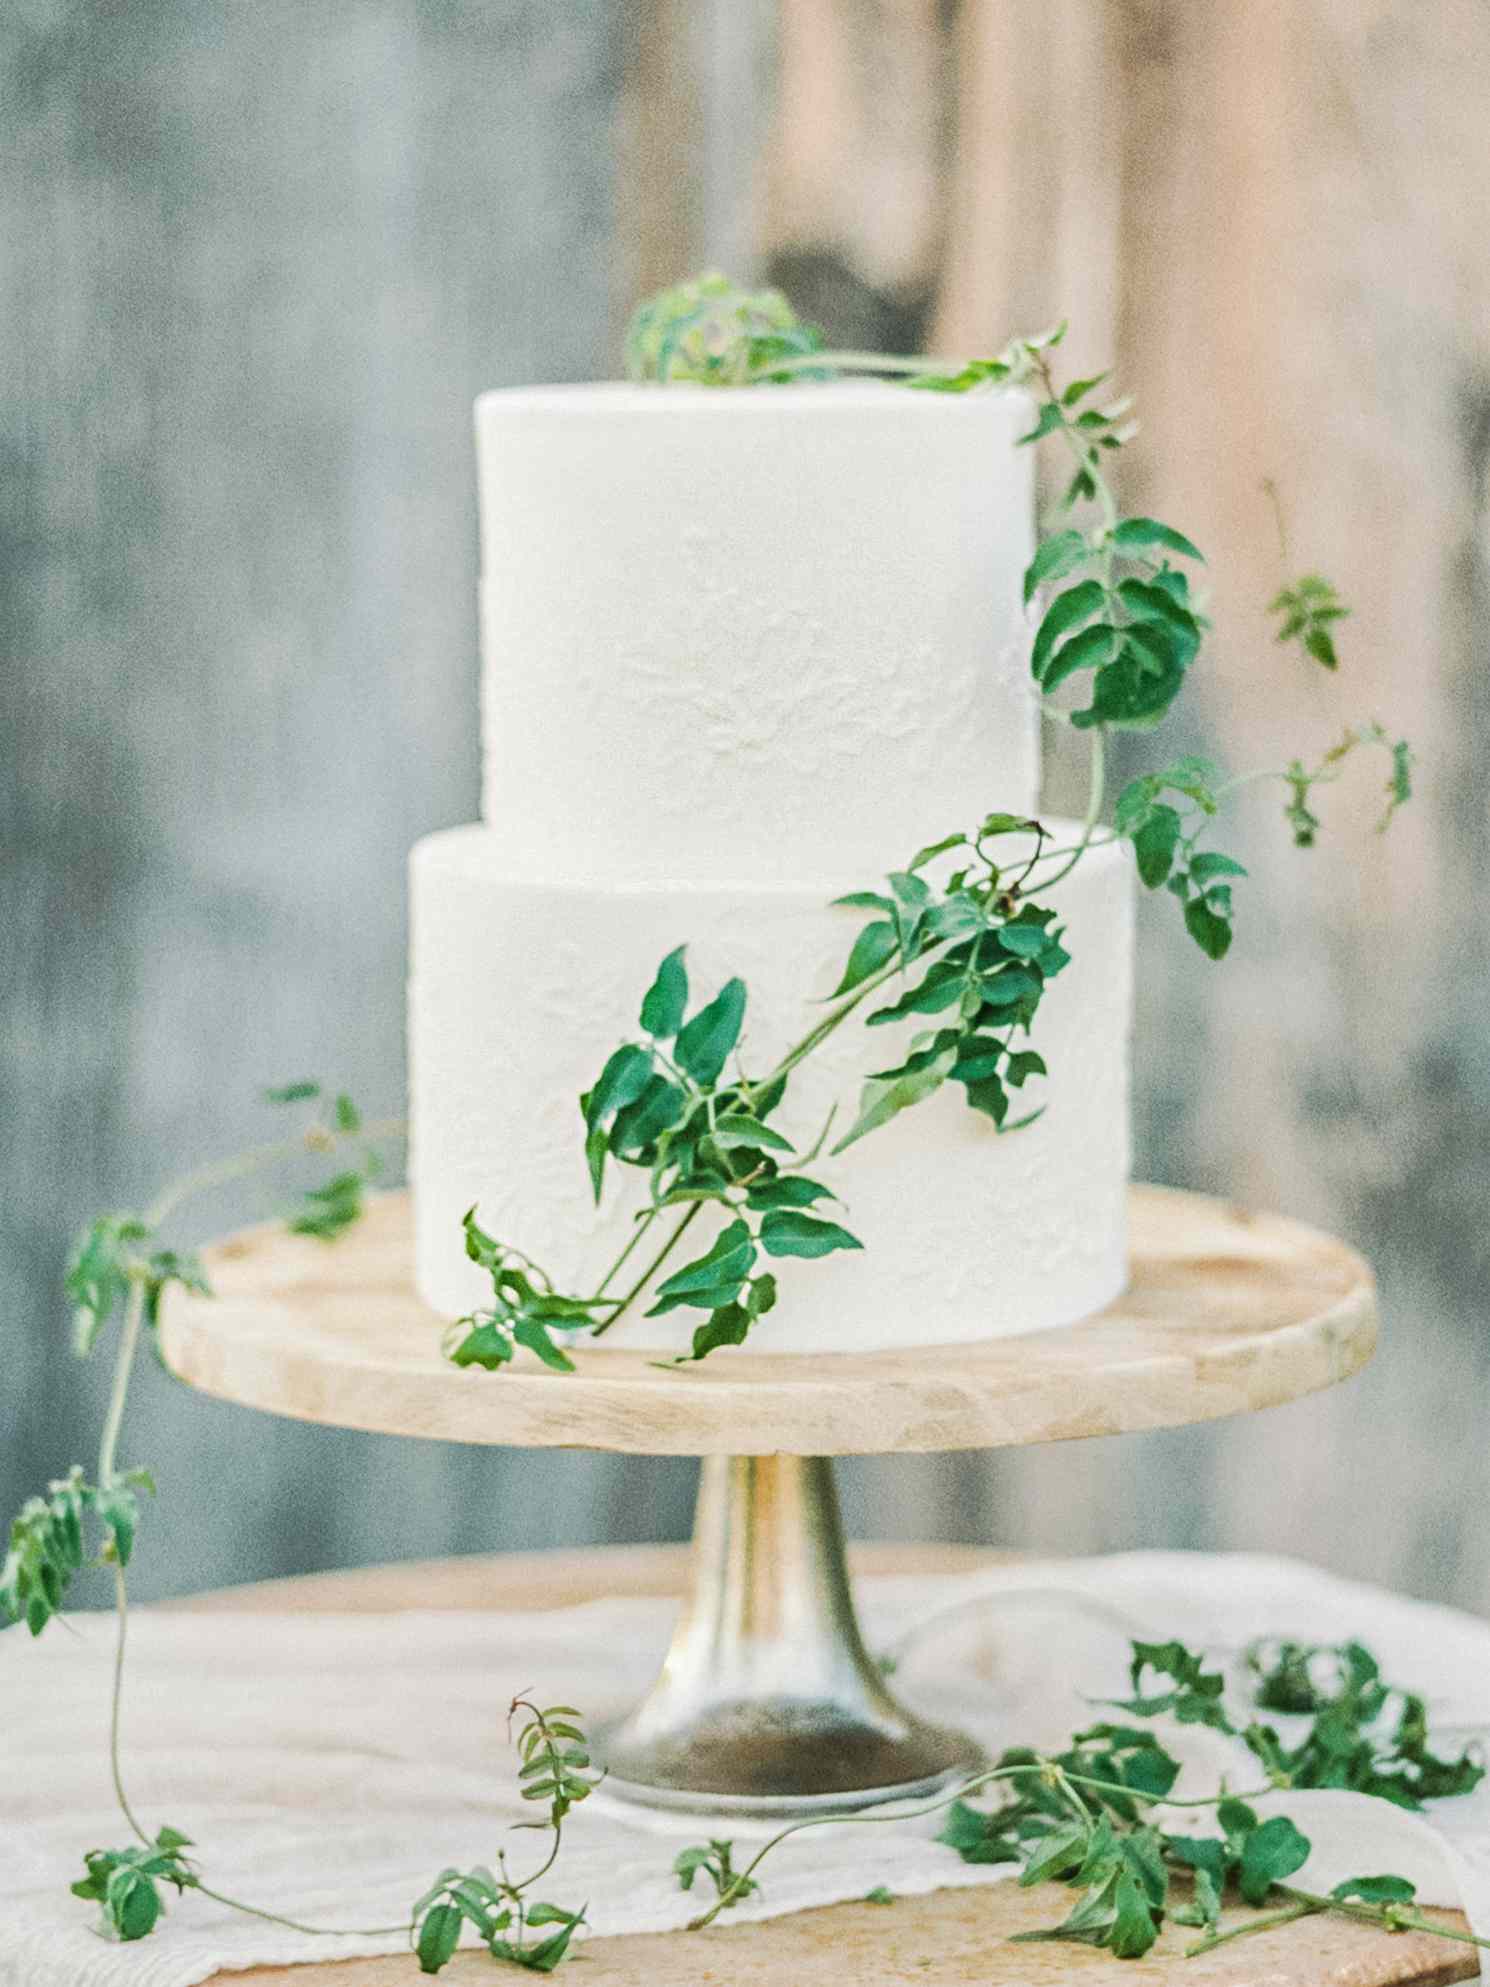 textured wedding cakes